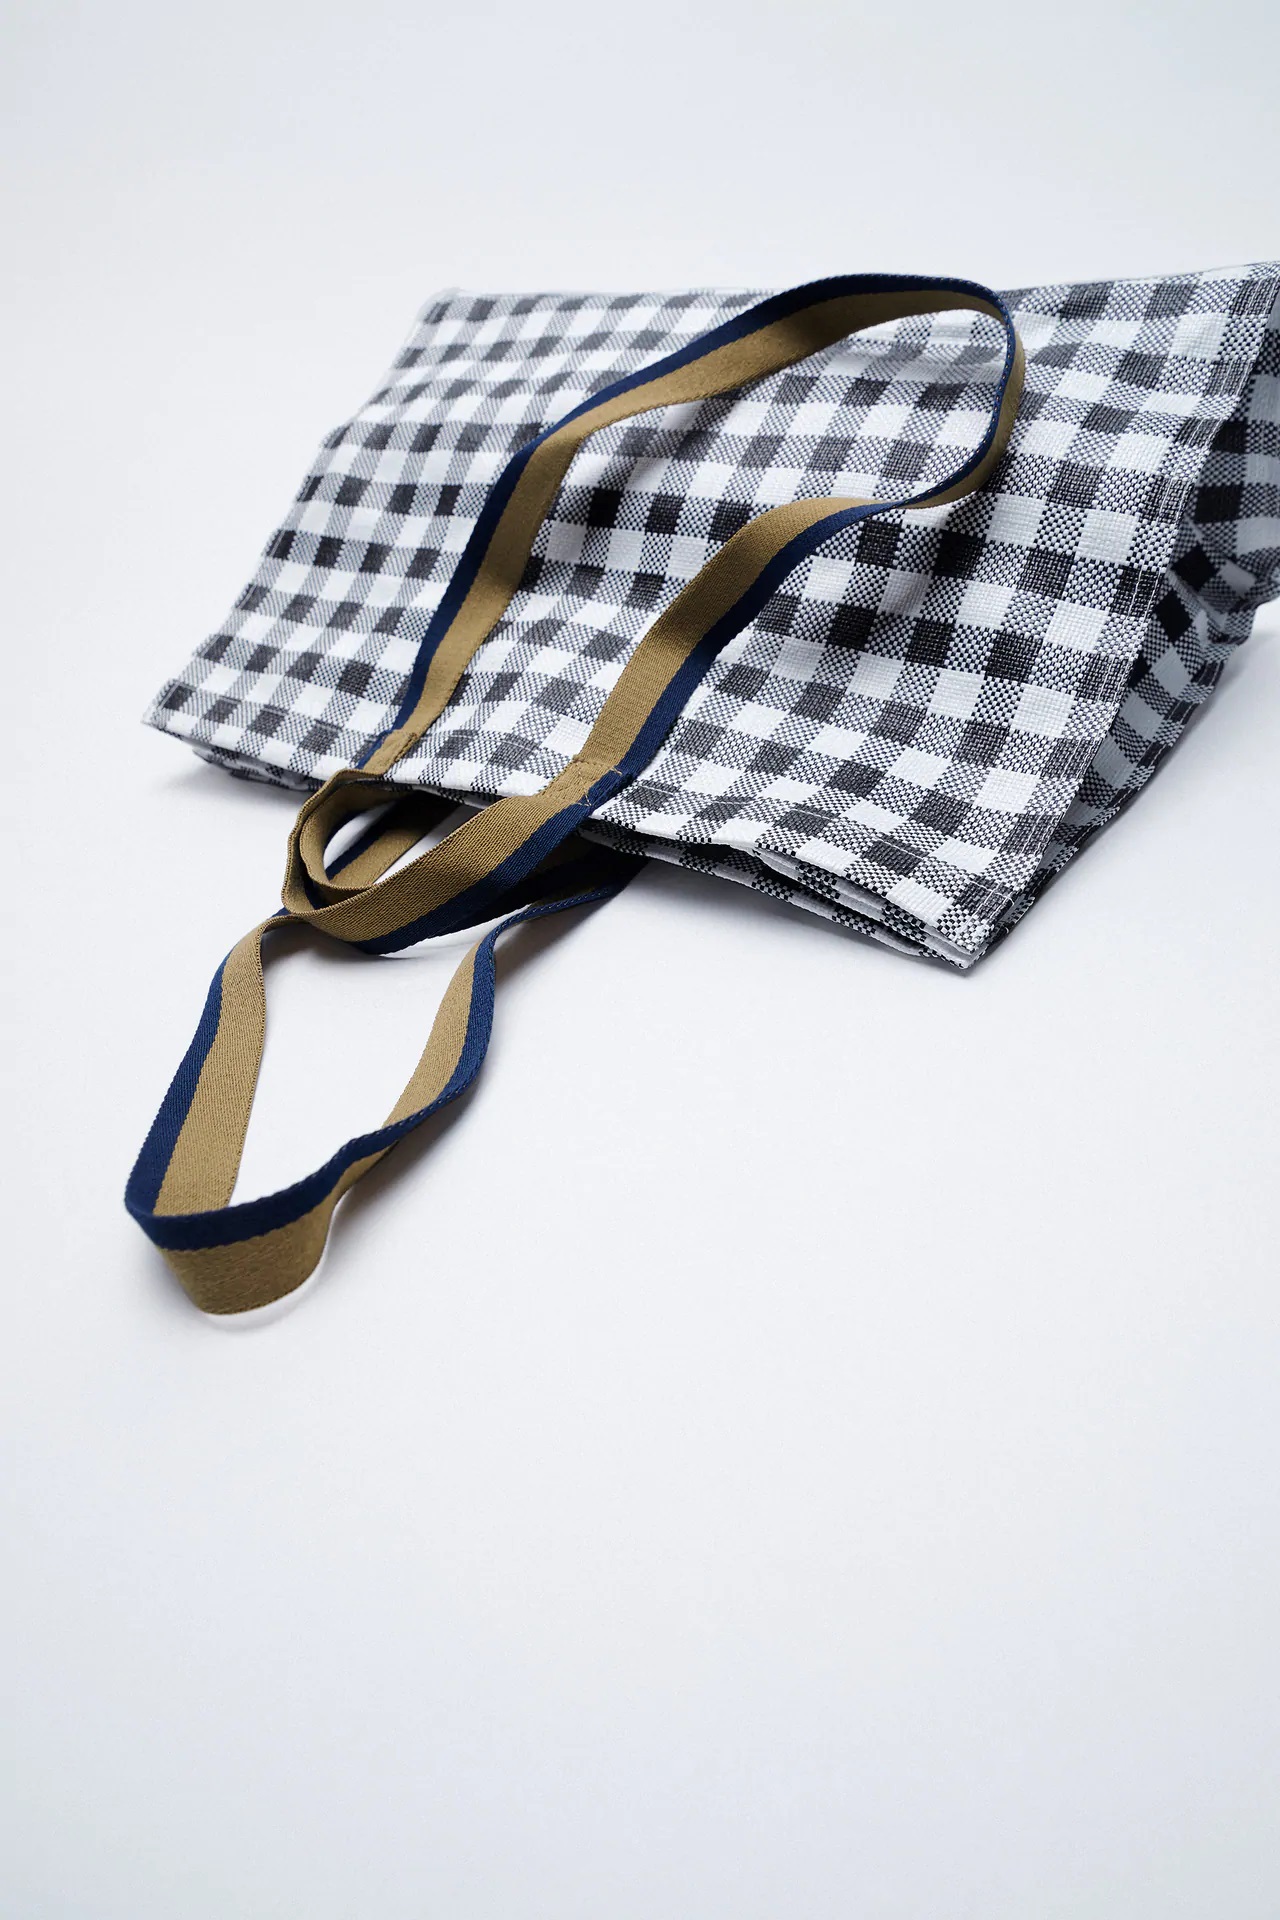 El nuevo bolso personalizable de Zara, versátil, resistente y cómodo vale solo 17 euros